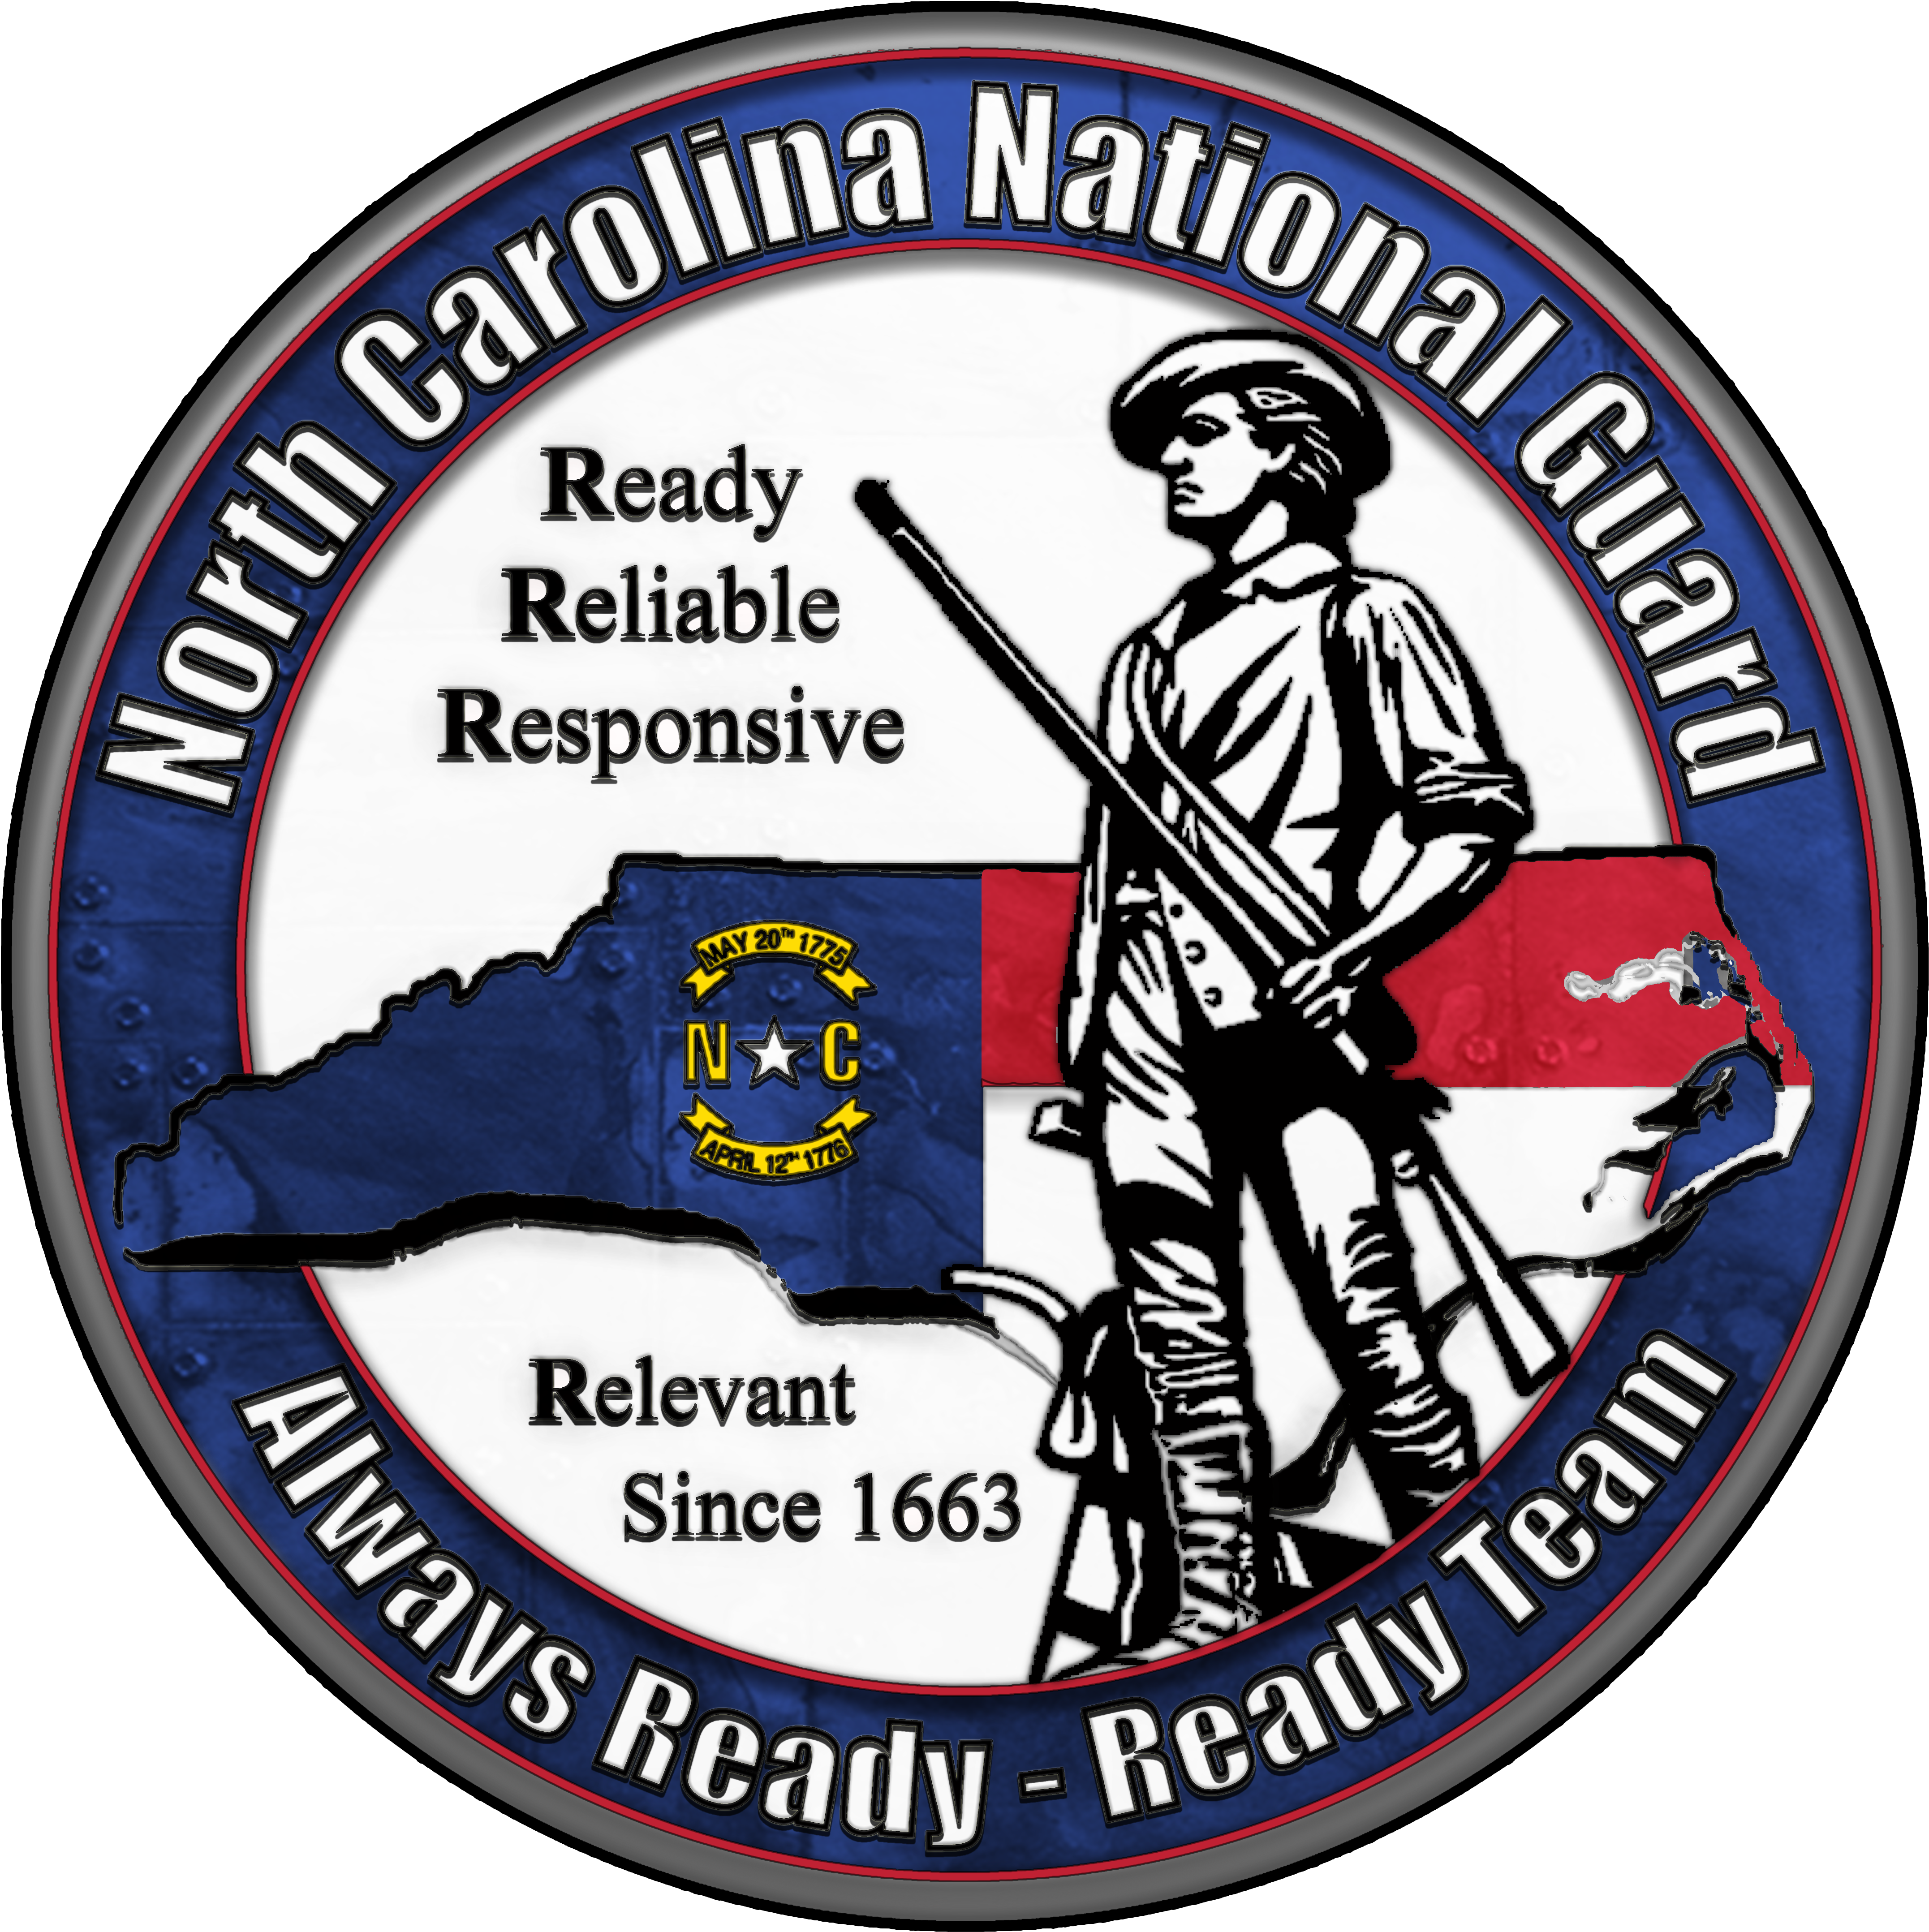 North Carolina Army National Guard Logo - North Carolina National Guard (4776x4722)